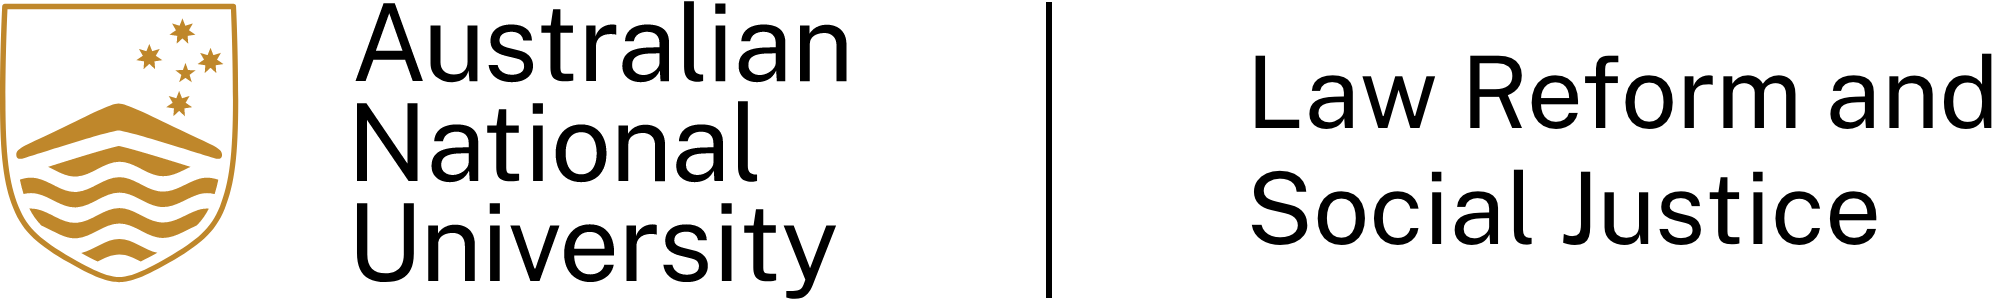 LRSJ logo